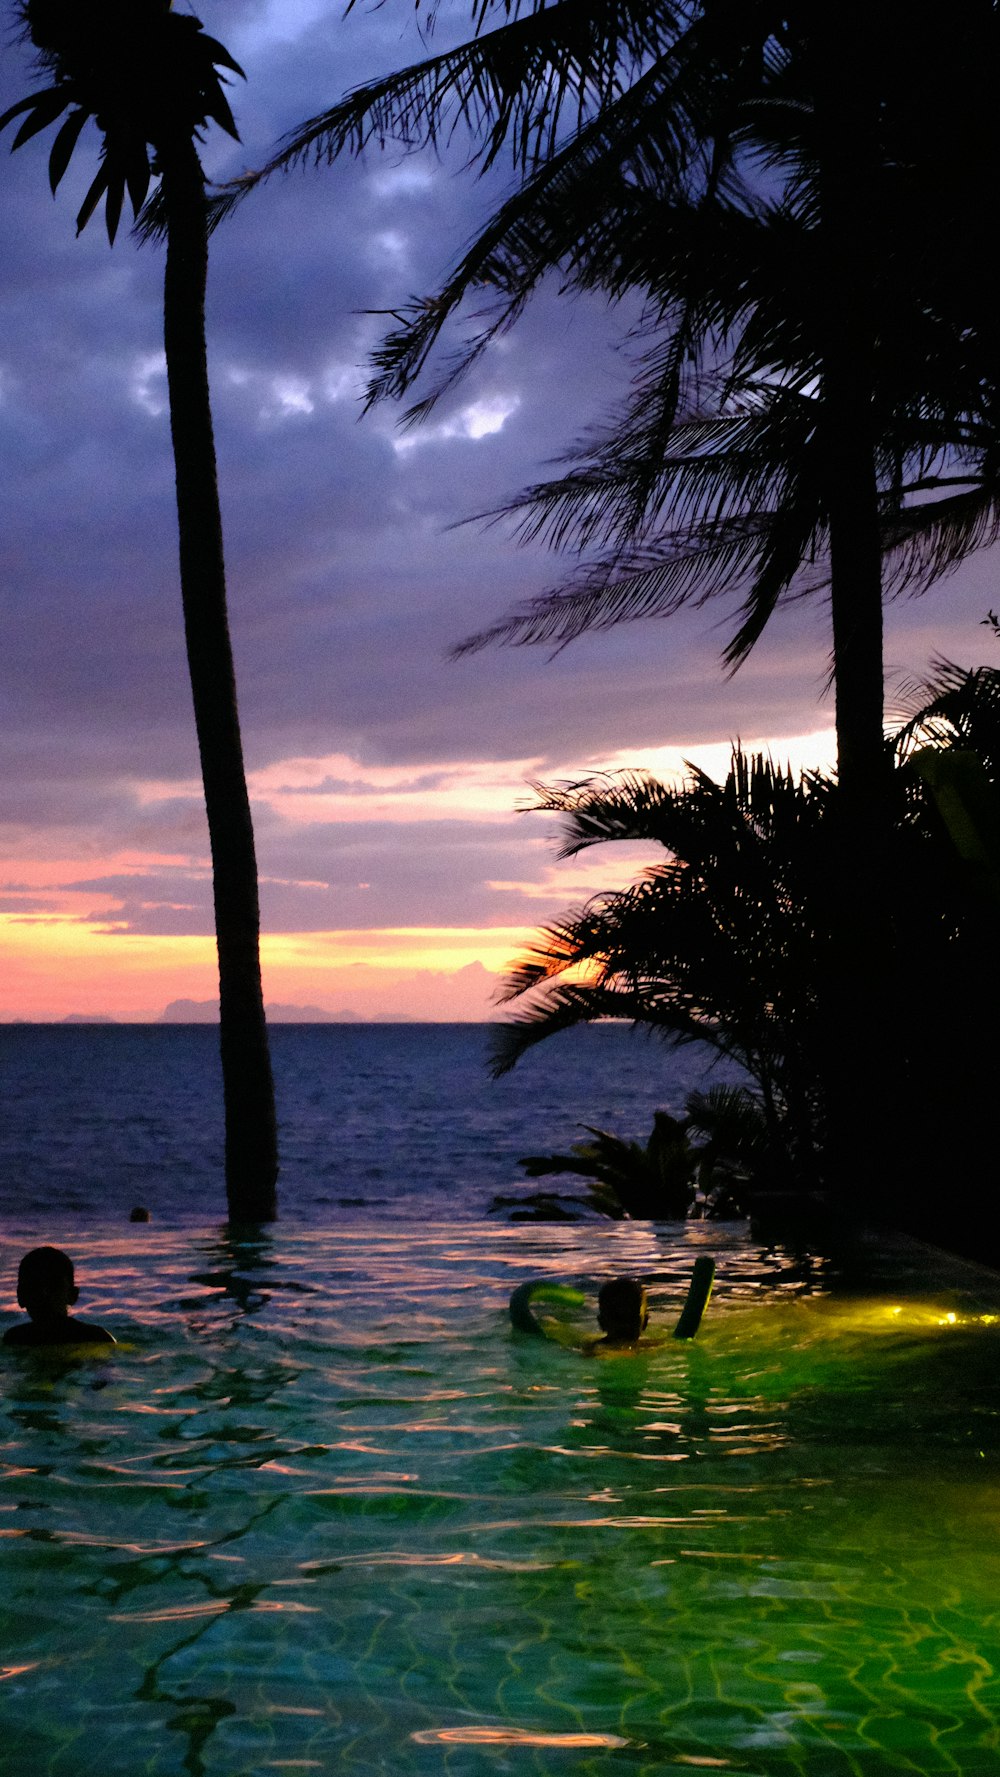 Un groupe de personnes dans une piscine près des palmiers et un coucher de soleil